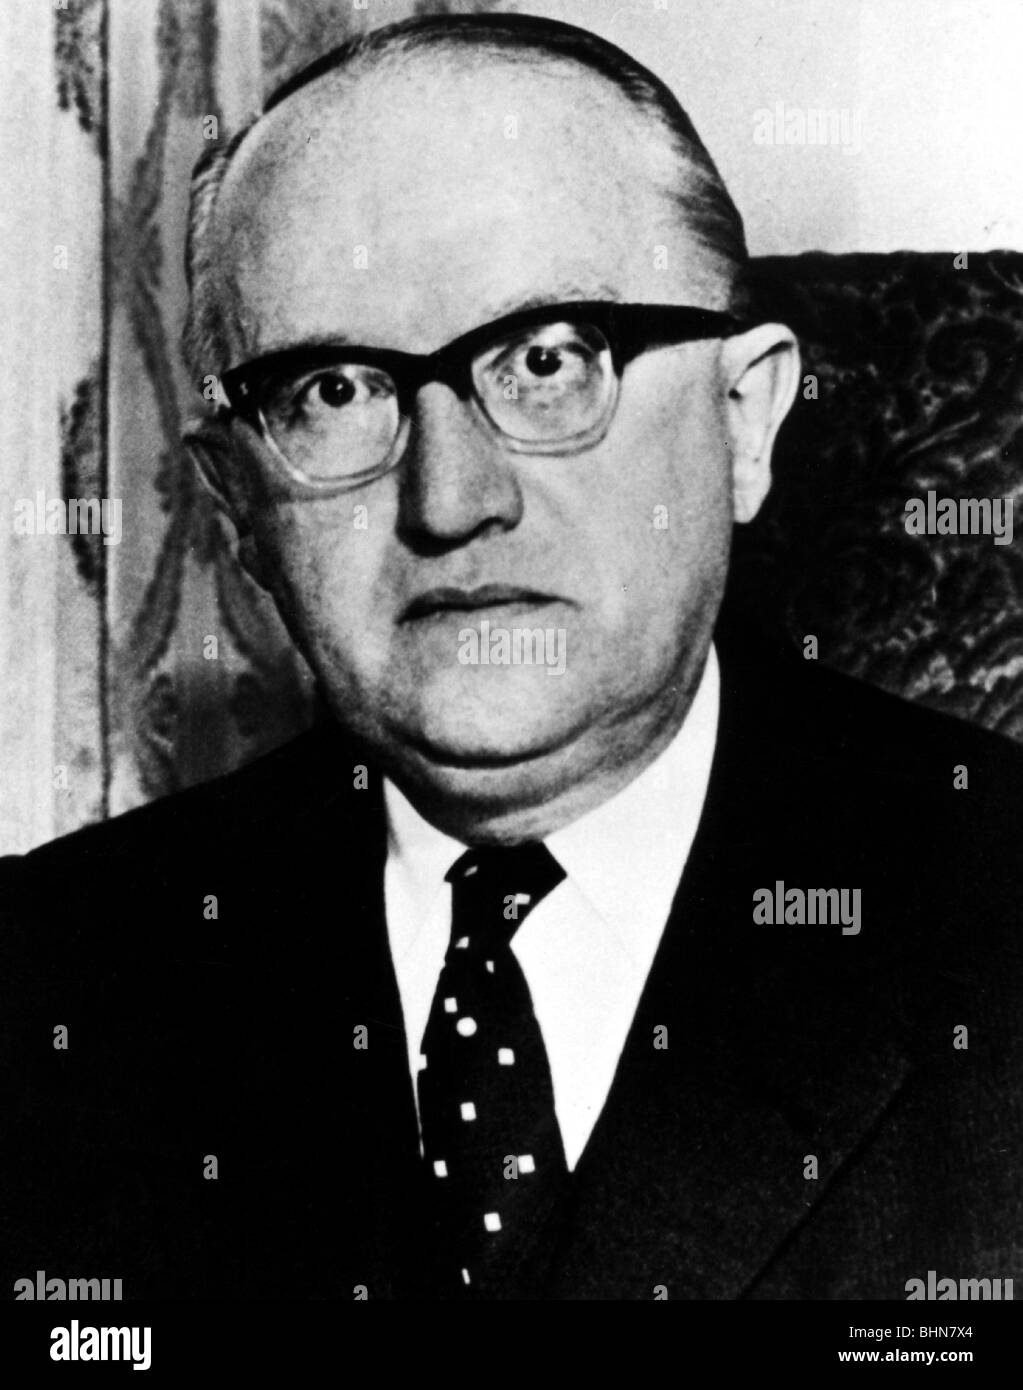 Hallstein, Walter, 17.11.1901 - 29.3.1982, giurista e politico tedesco (CDU), presidente della Commissione europea 1958 - 1967, ritratto, circa 1965, Foto Stock